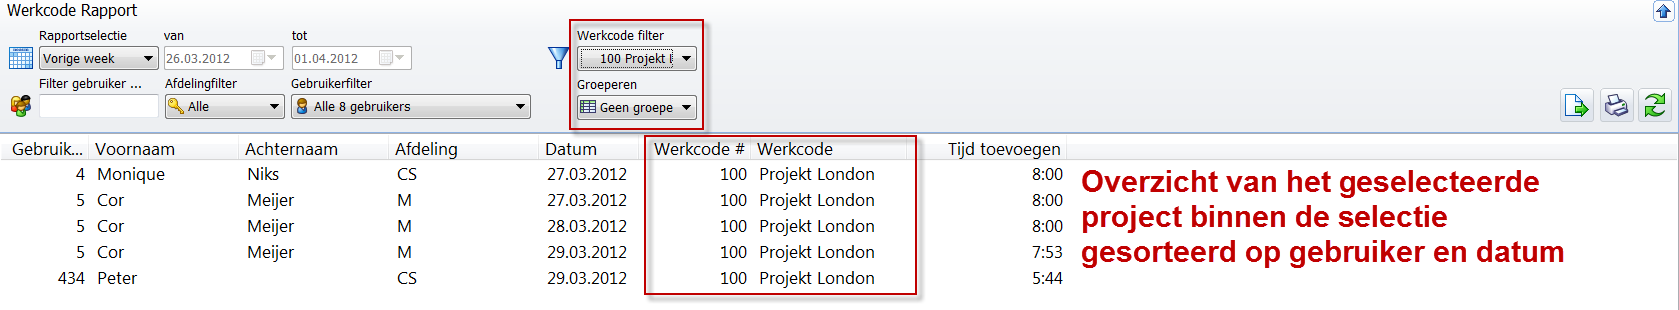 1.2 Evaluatie per werk- of projectcode Met de werkcode filter kunt u een specifiek